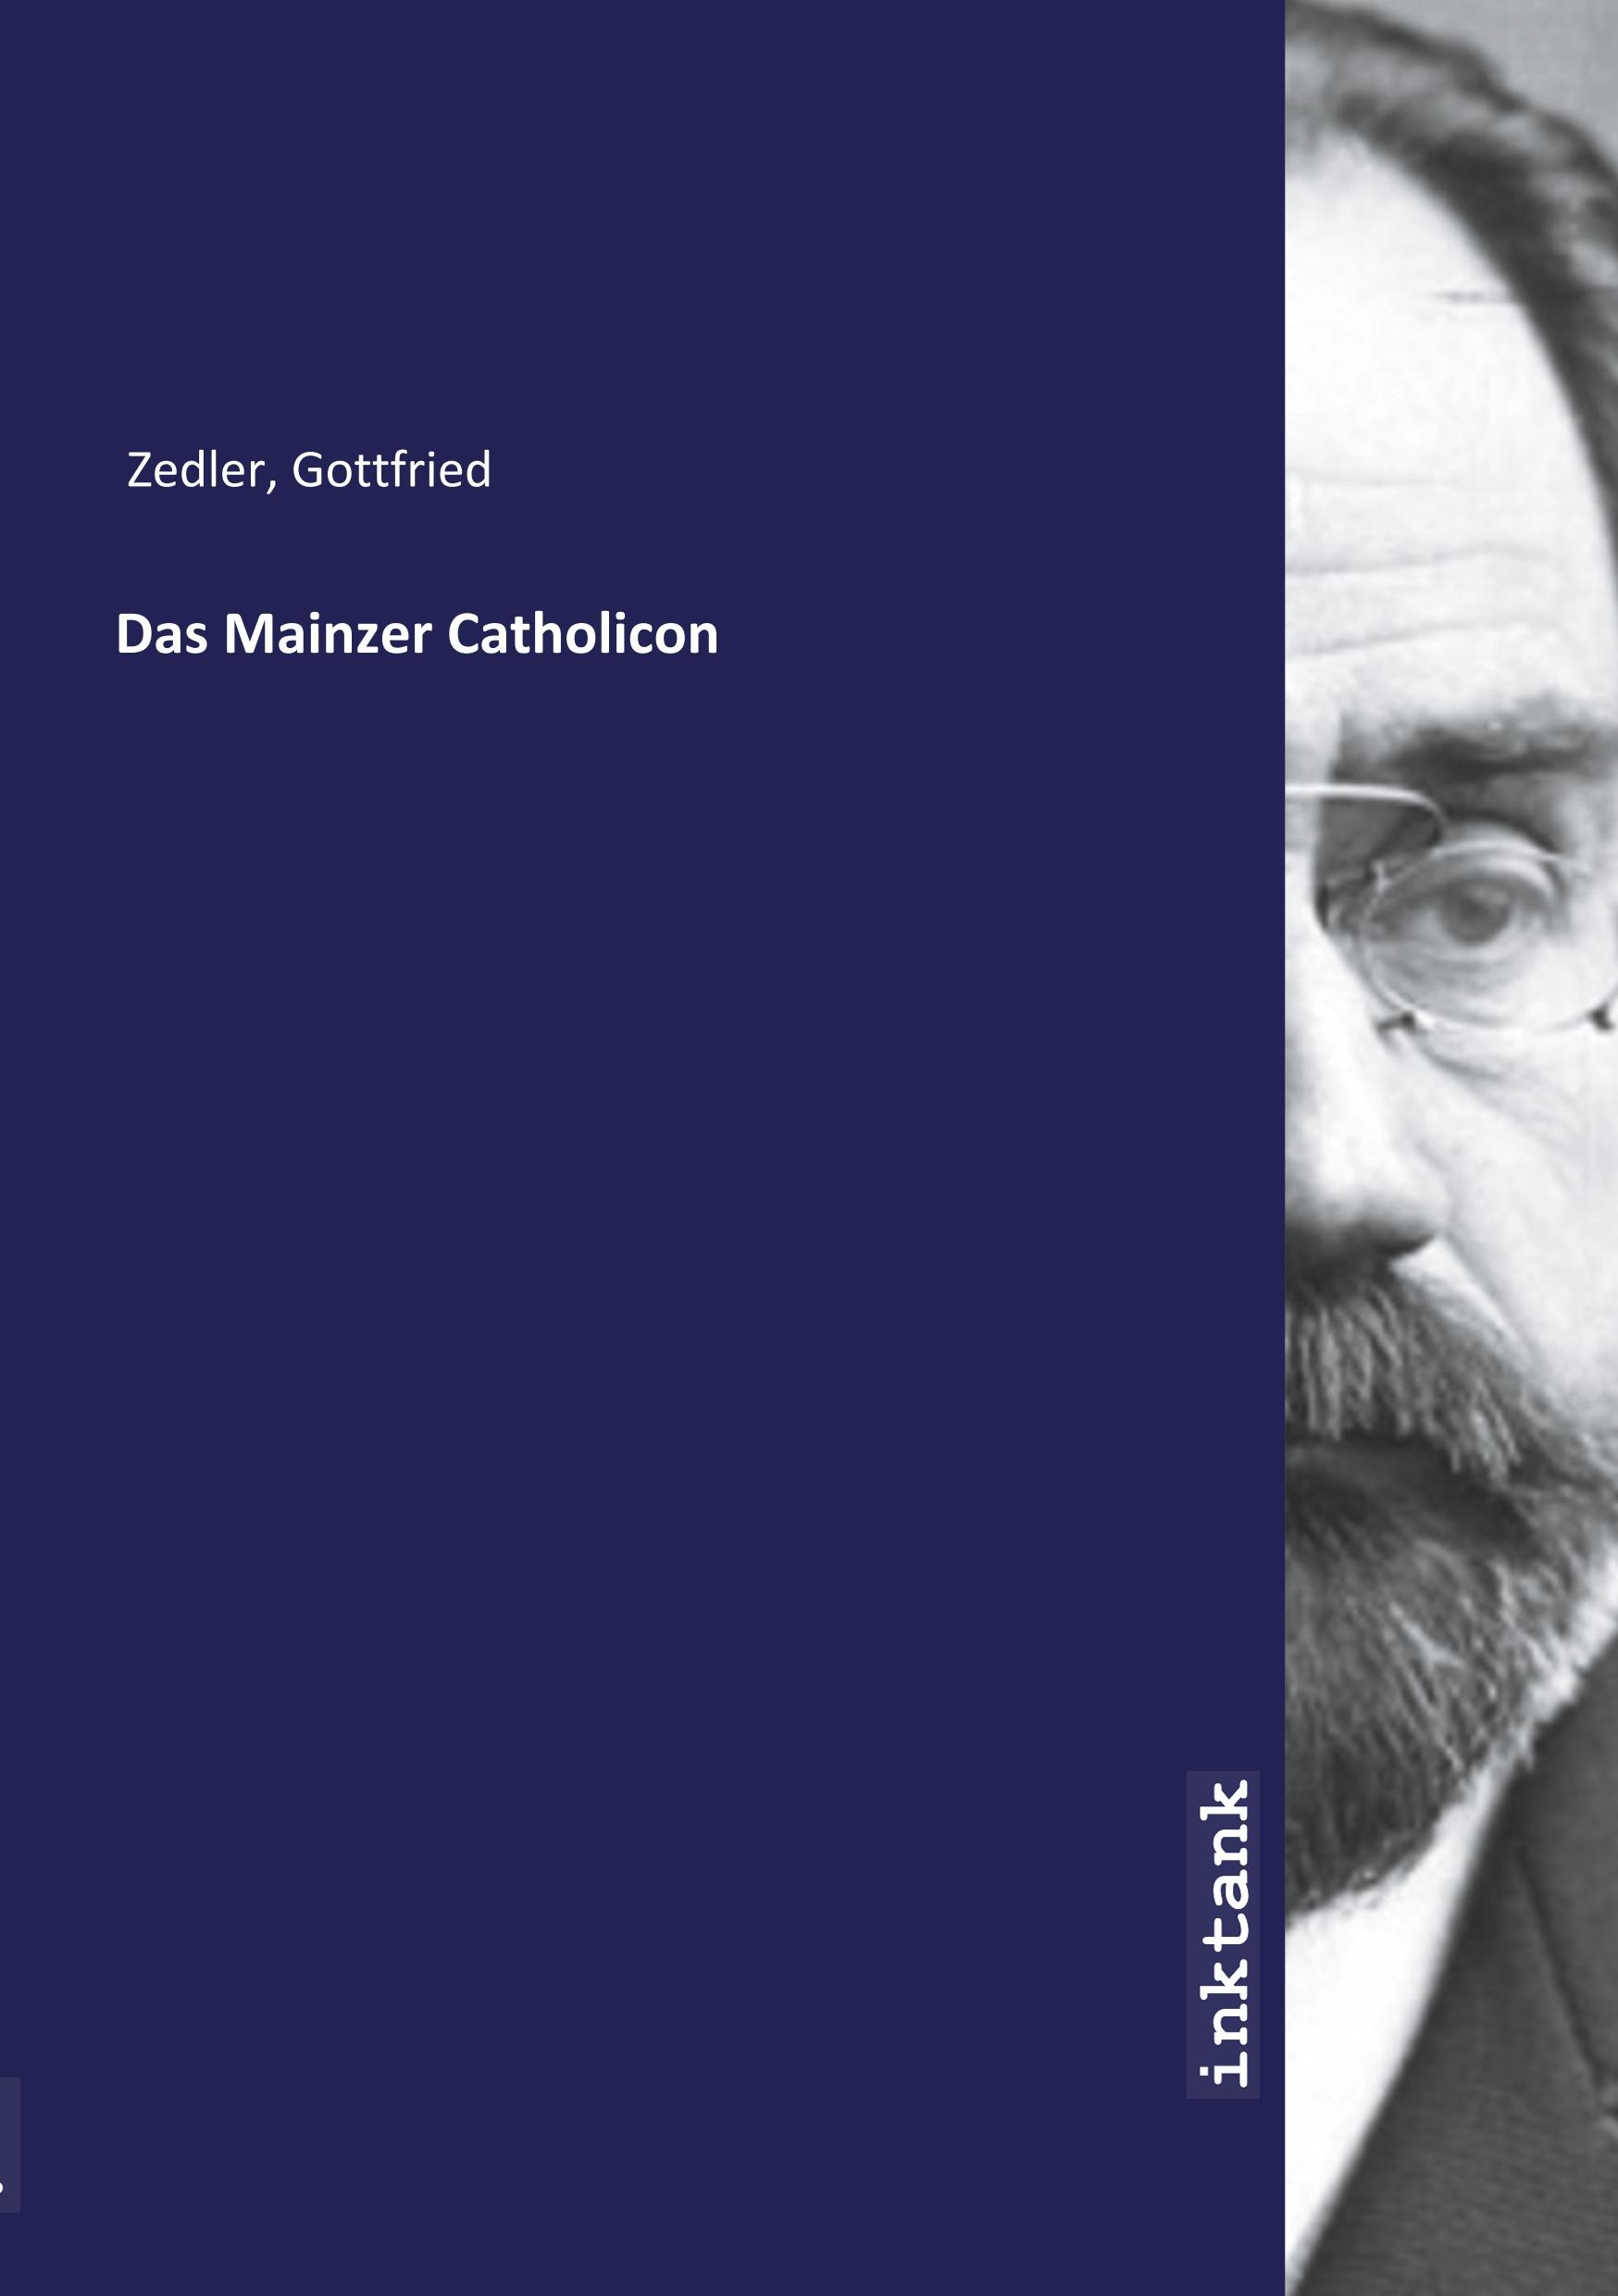 Das Mainzer Catholicon - Zedler, Gottfried